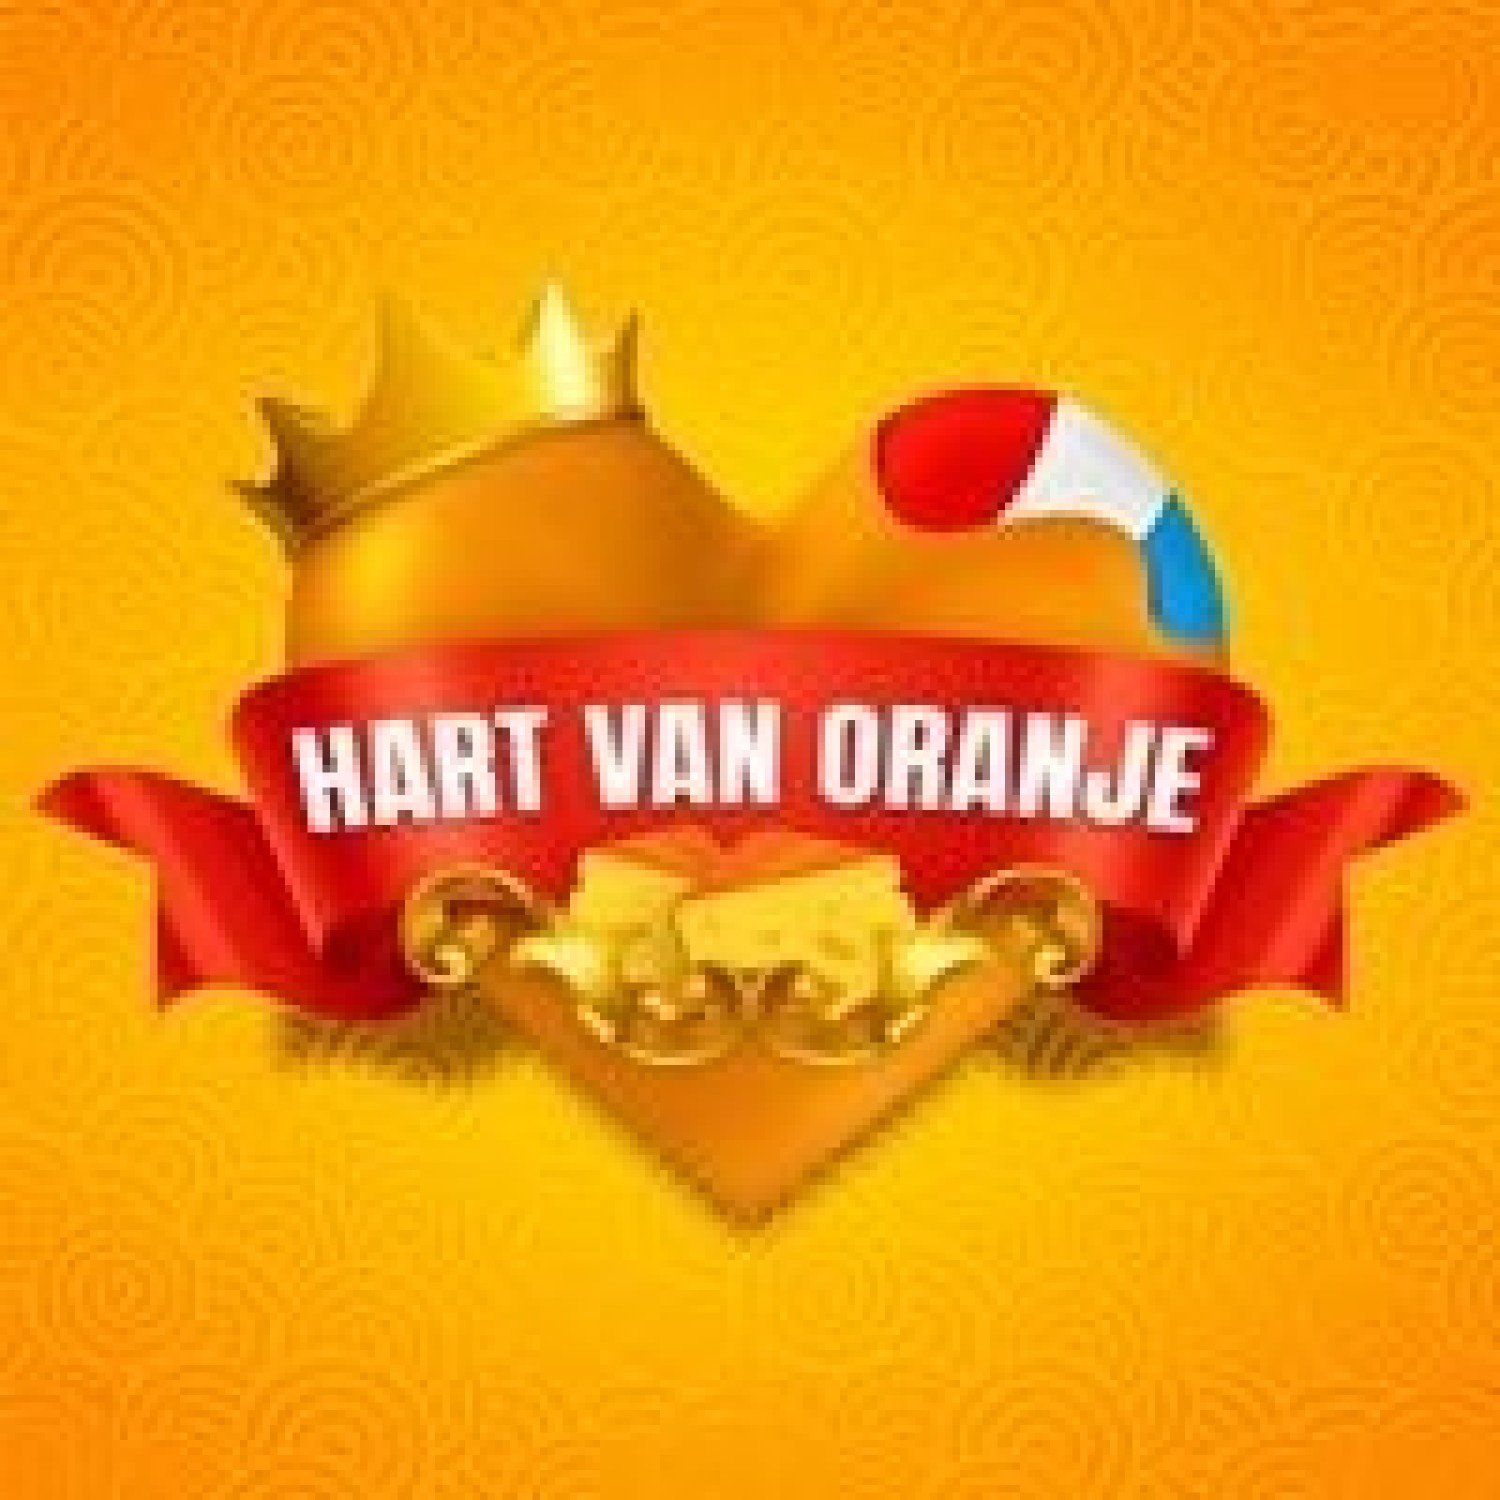 Stichting Hart van Oranje